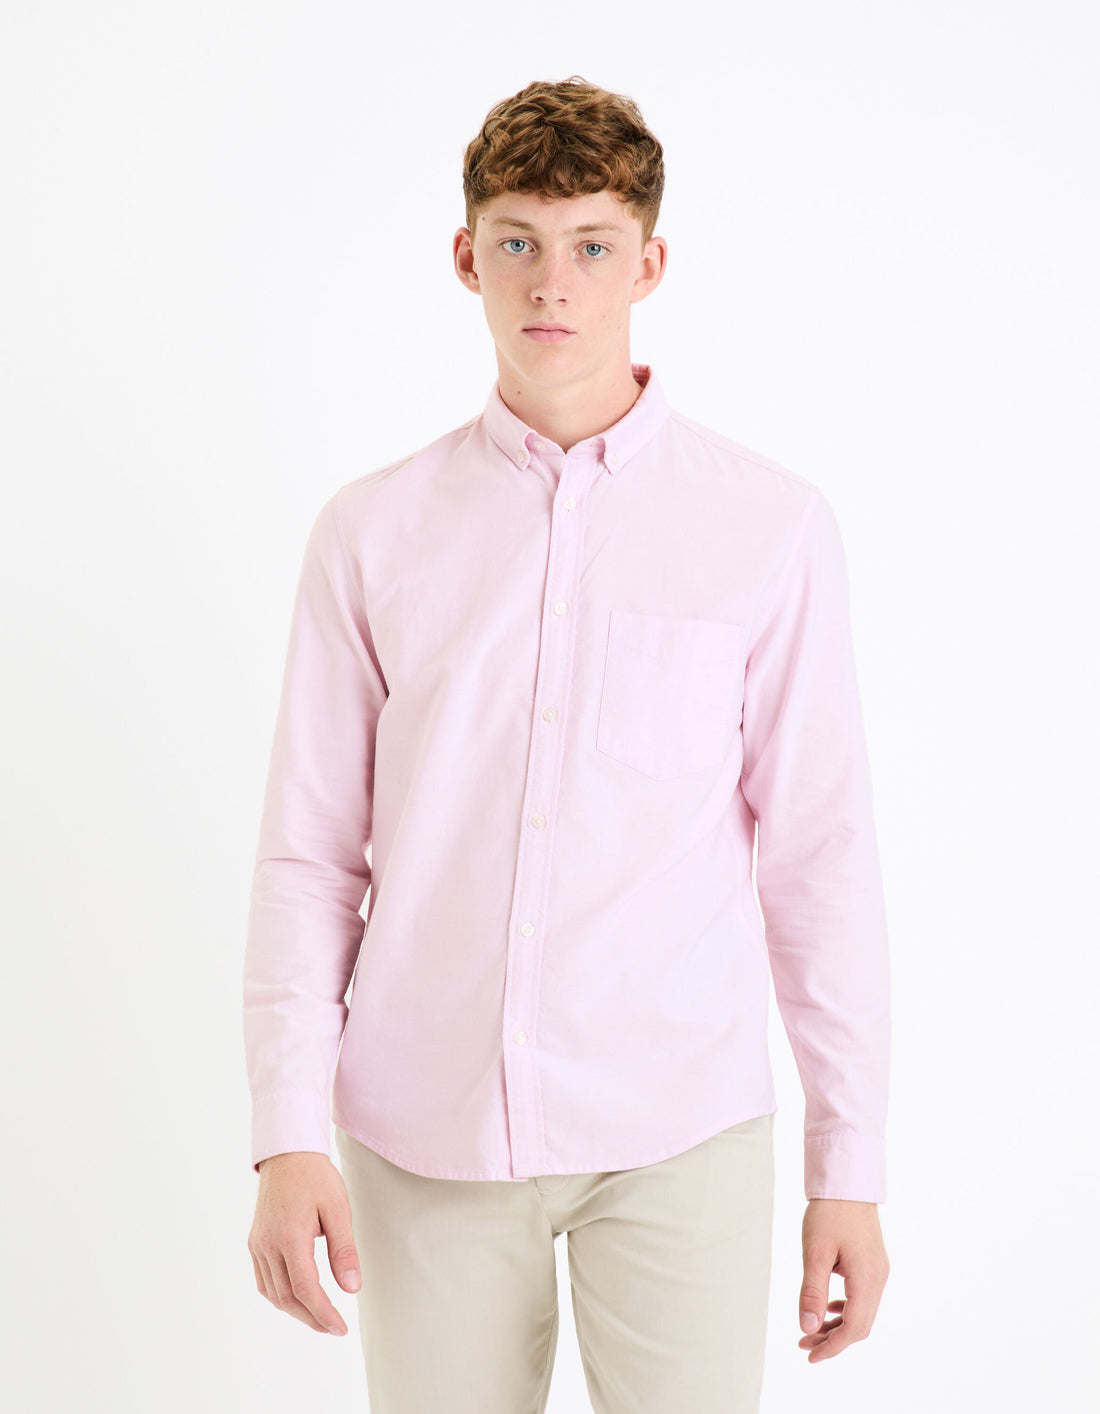 Regular Shirt 100% Oxford Cotton - Light Pink_DAXFORD_LIGHT PINK_01